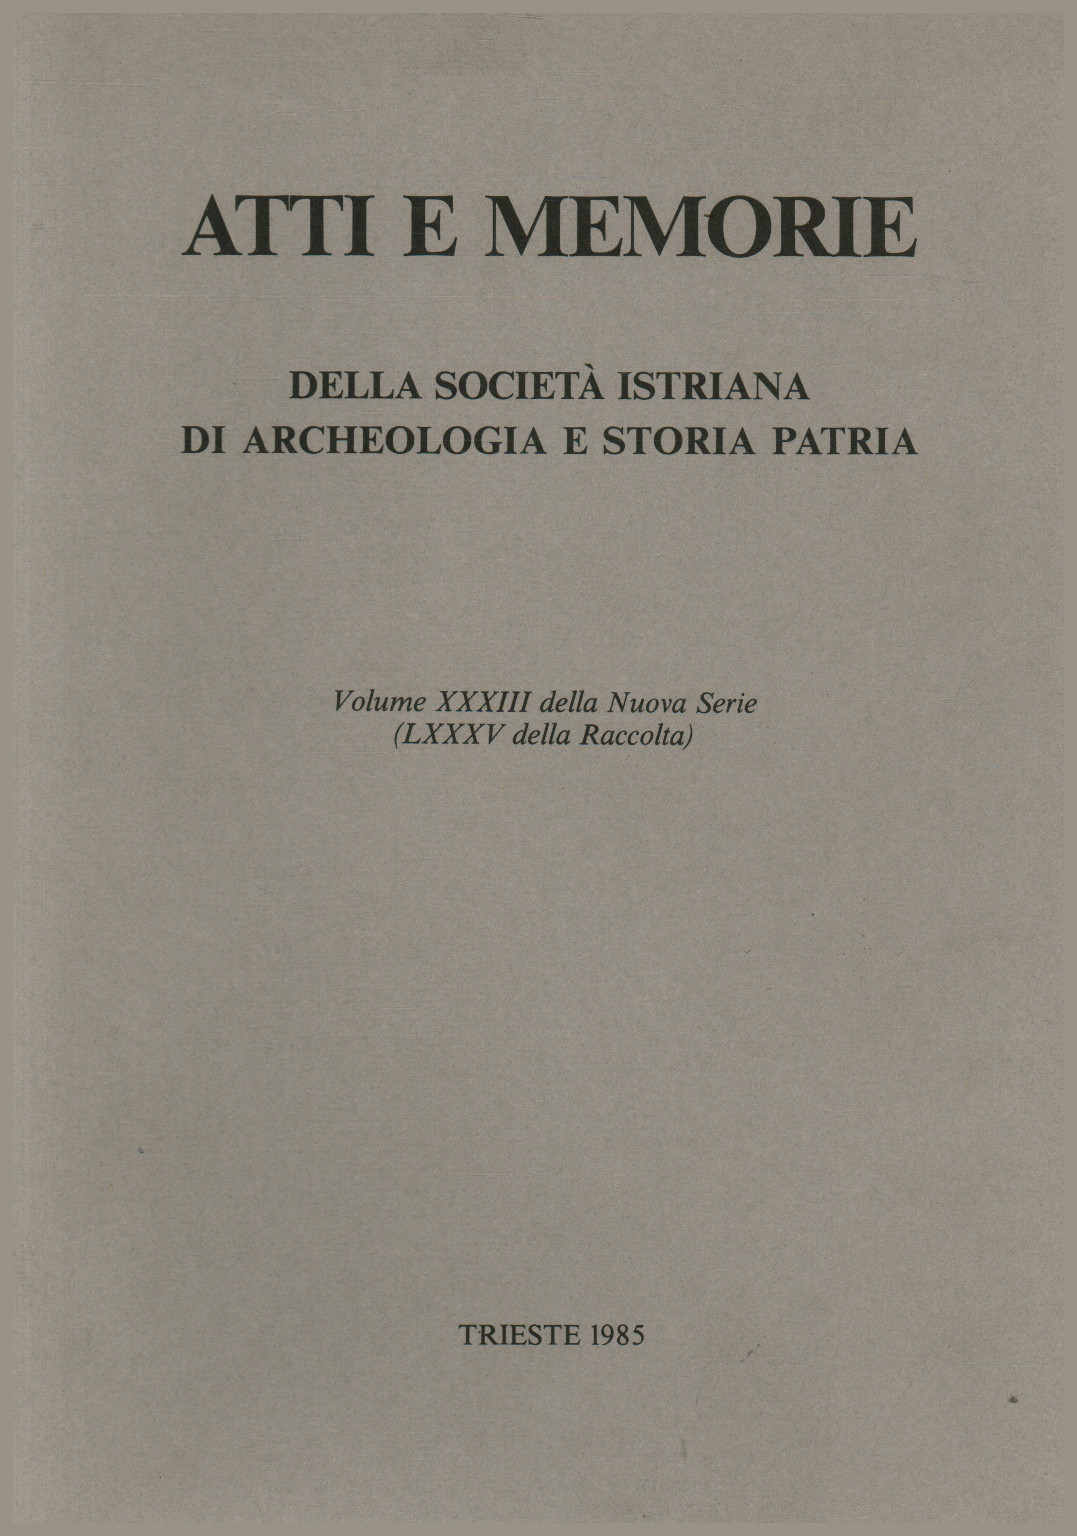 Actes et mémoires de la société istrienne d'archeolo, s.a.